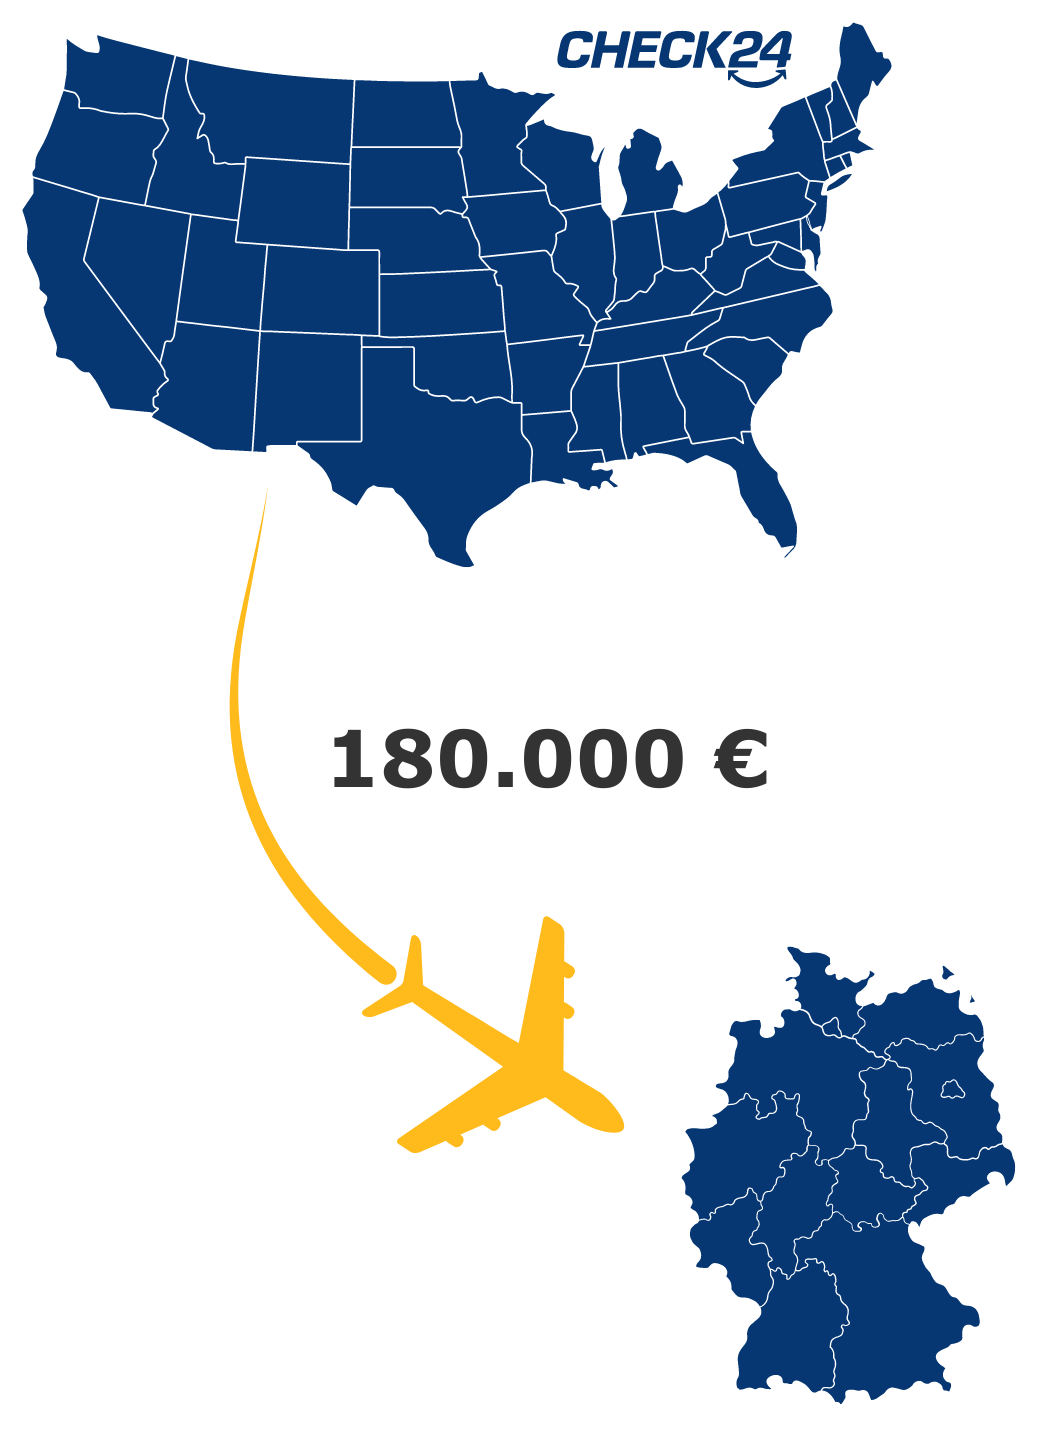 Landkarten von der USA und Deutschland, die mit einem Flugzeug verbunden werden. Die Flugkosten betragen 180.000 Euro. 